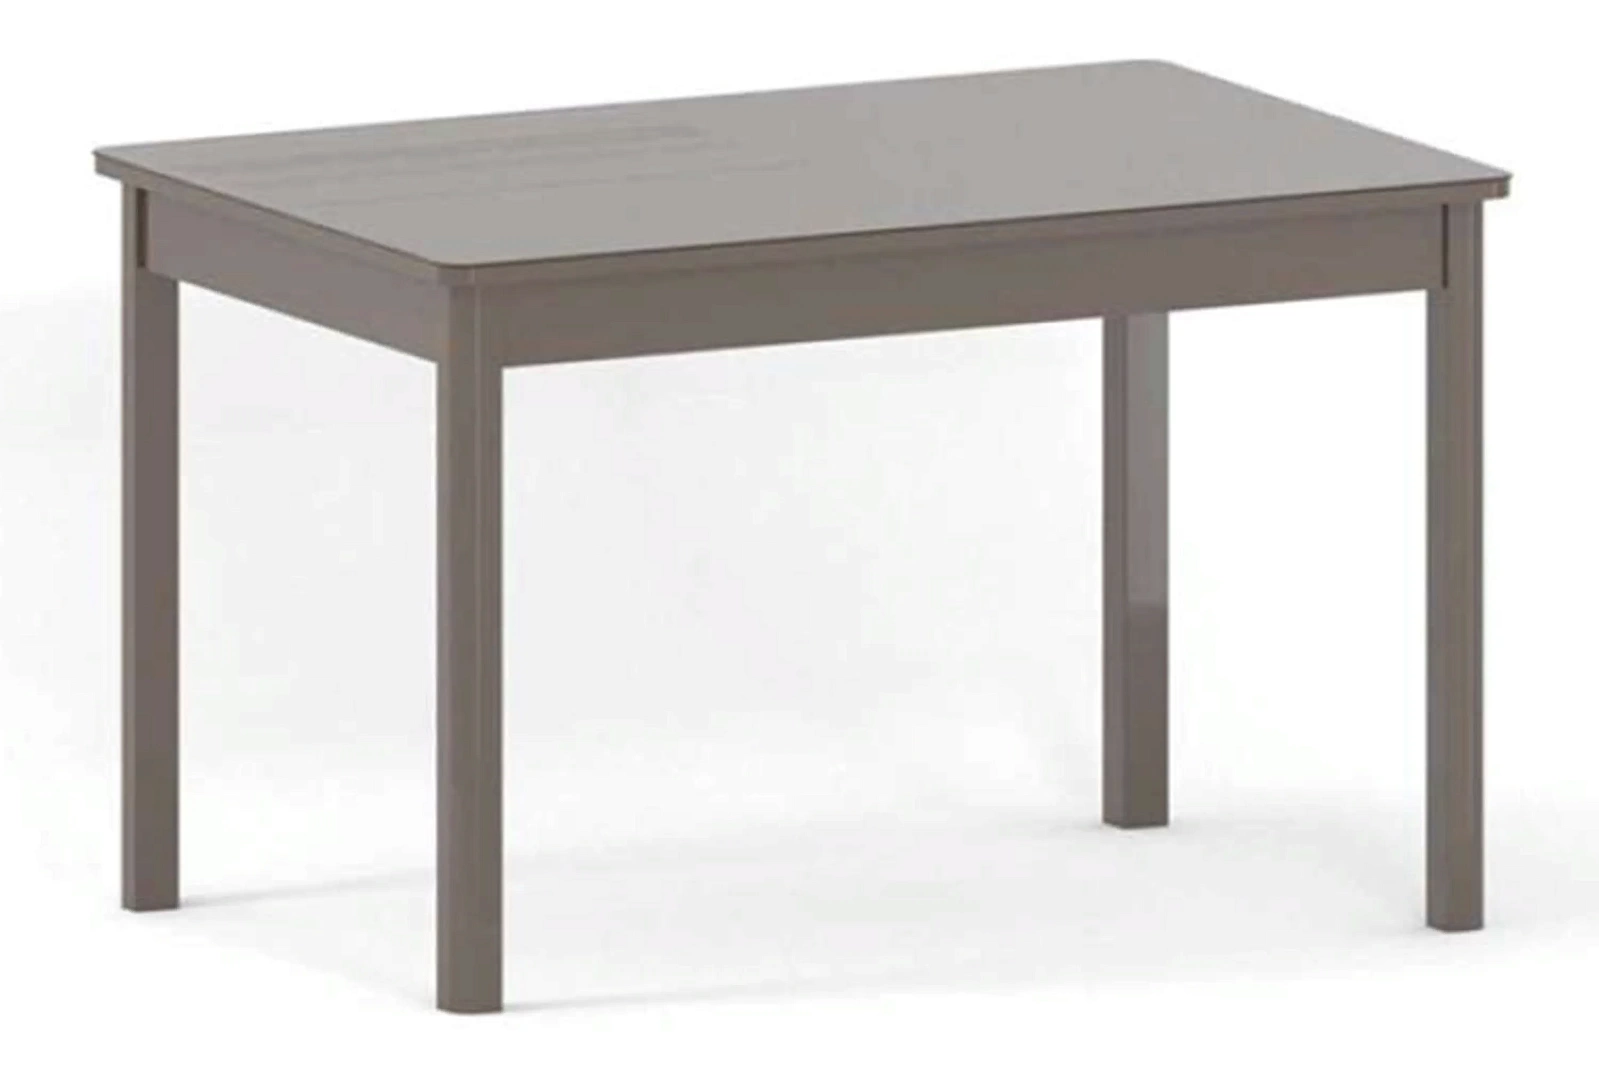 ПРЕСТИЖ-2 стол раскладной однотонный 120/152 см (стекло)